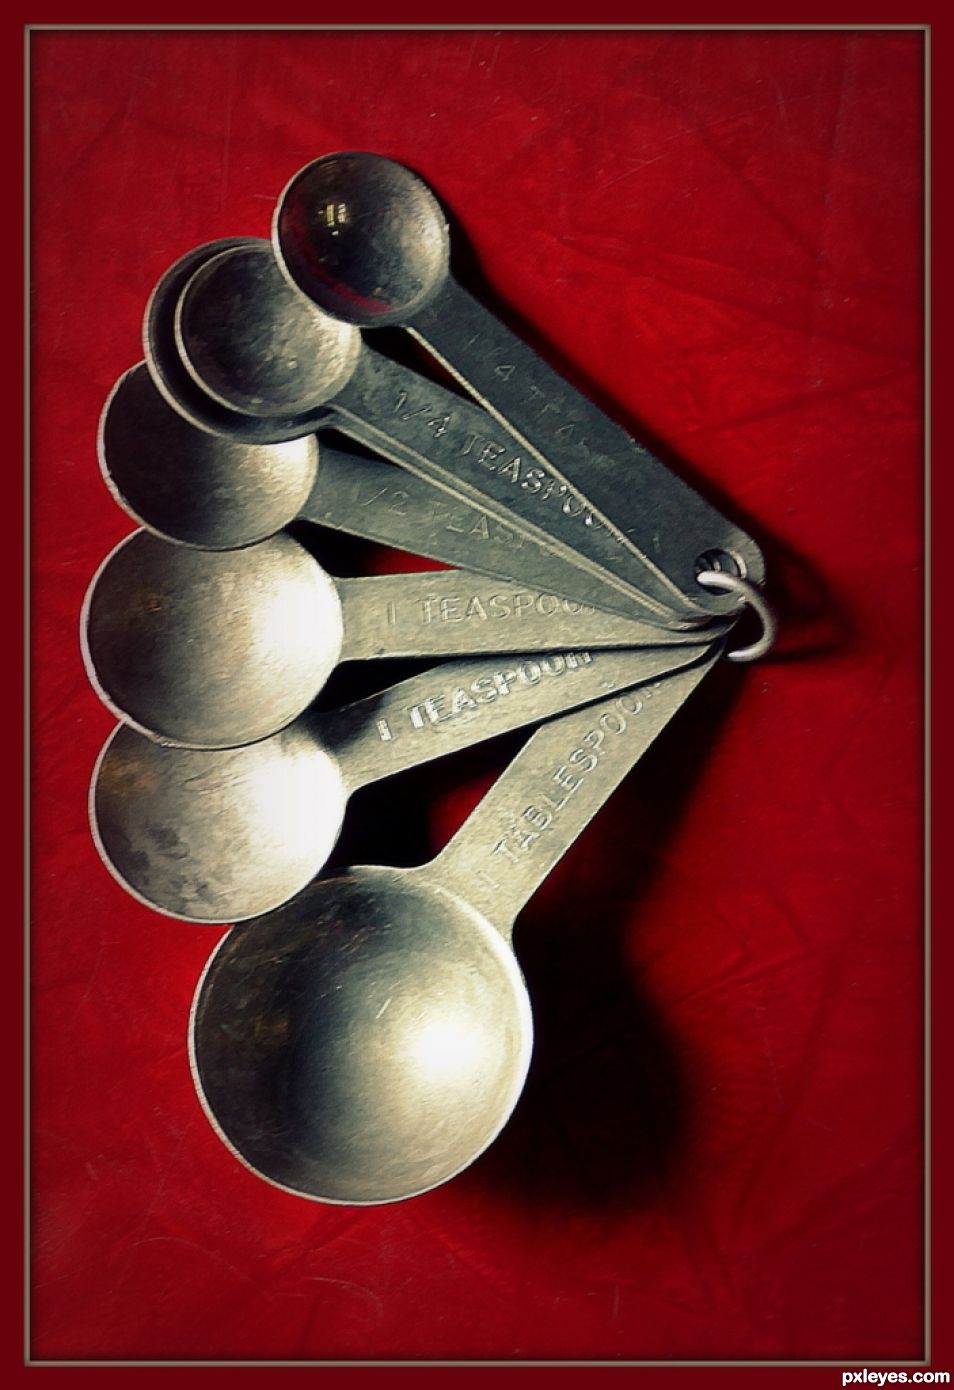 Spoons of Measure